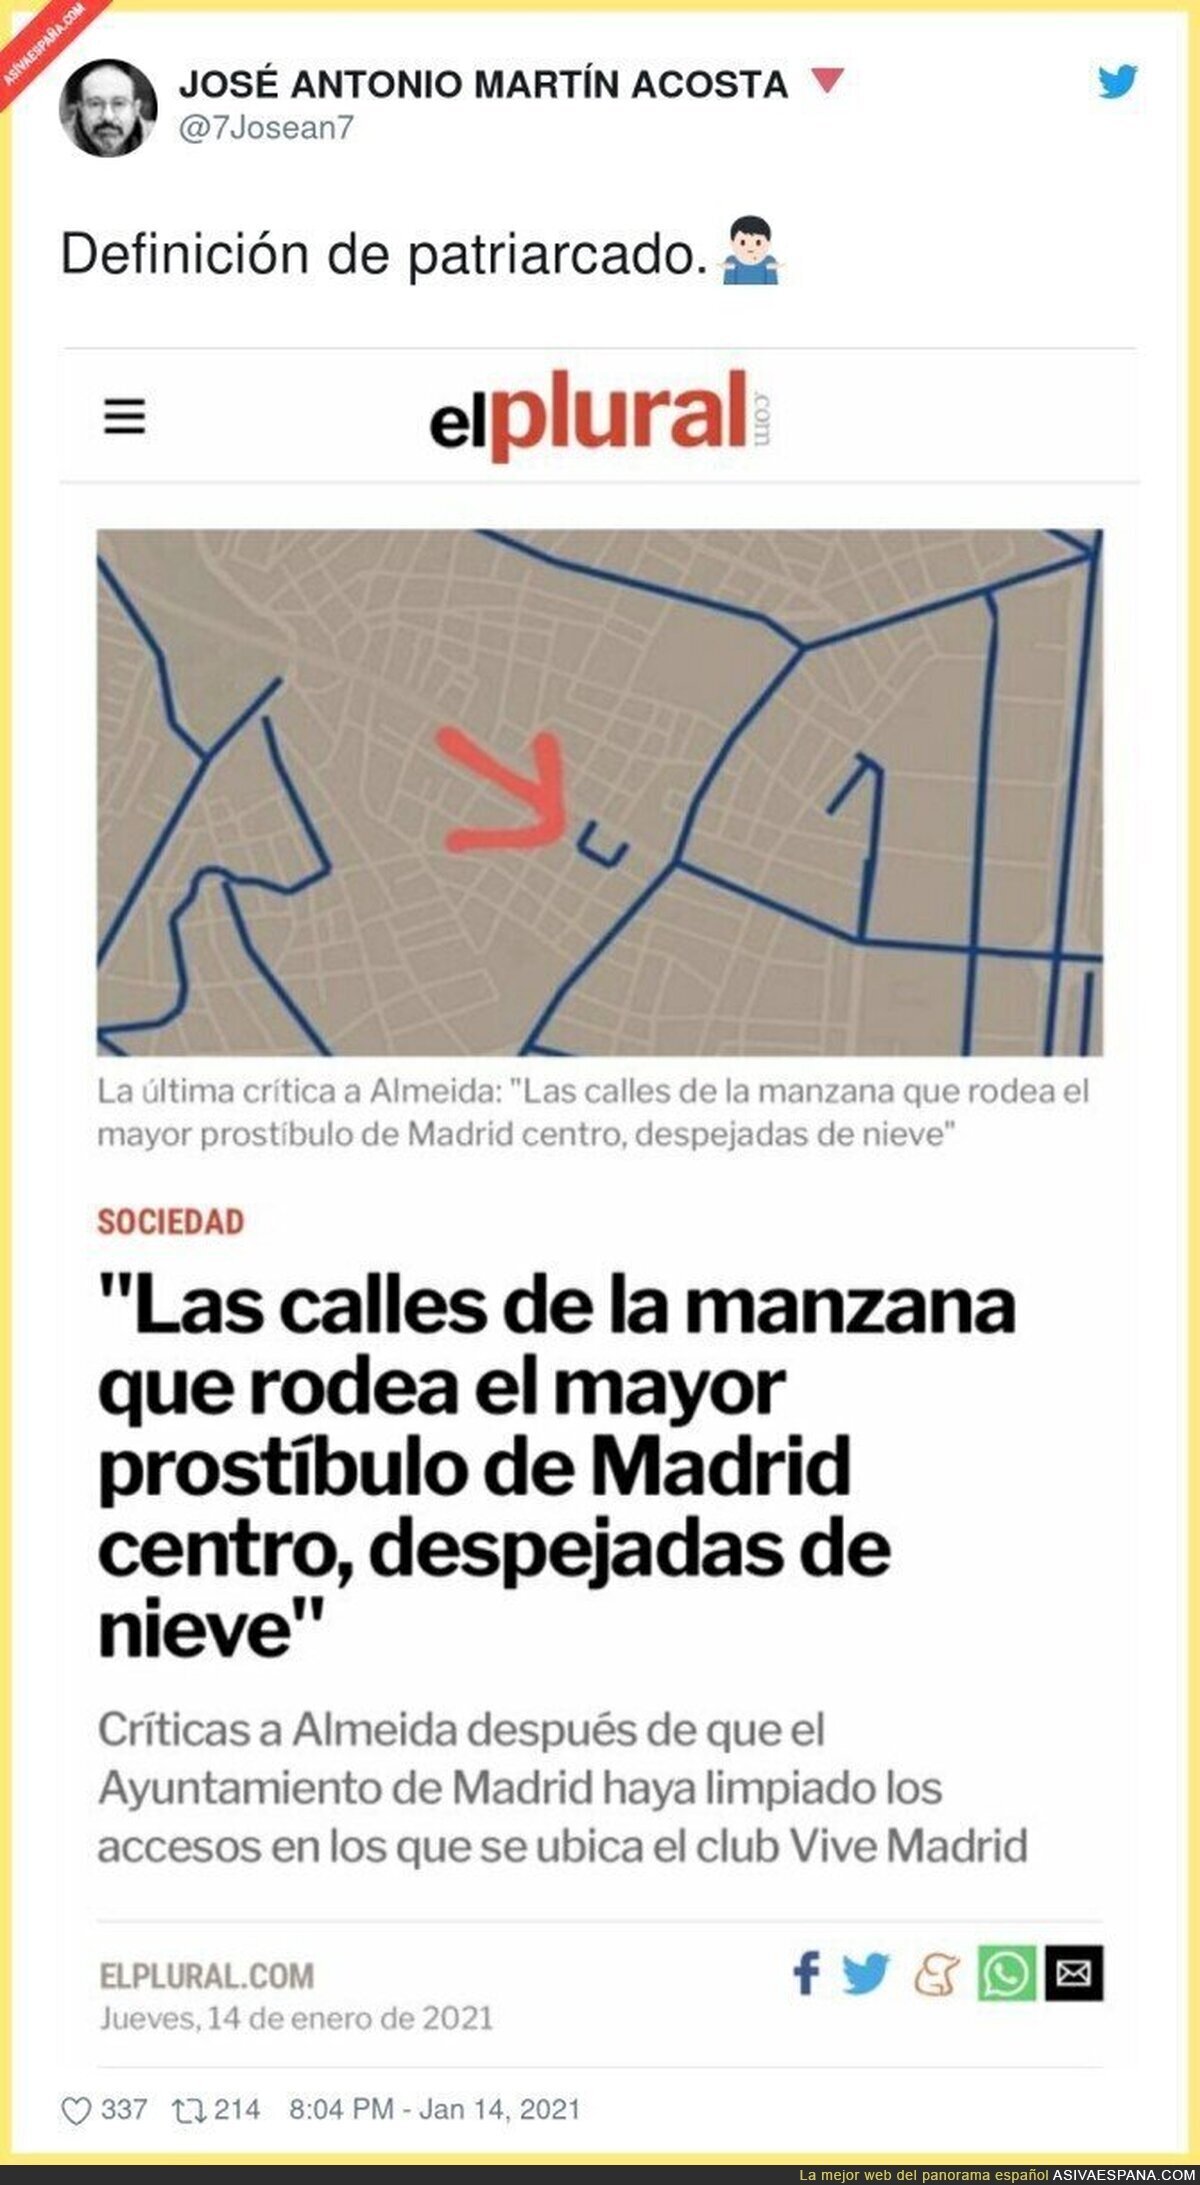 Curiosa situación de esa calle en concreto de Madrid